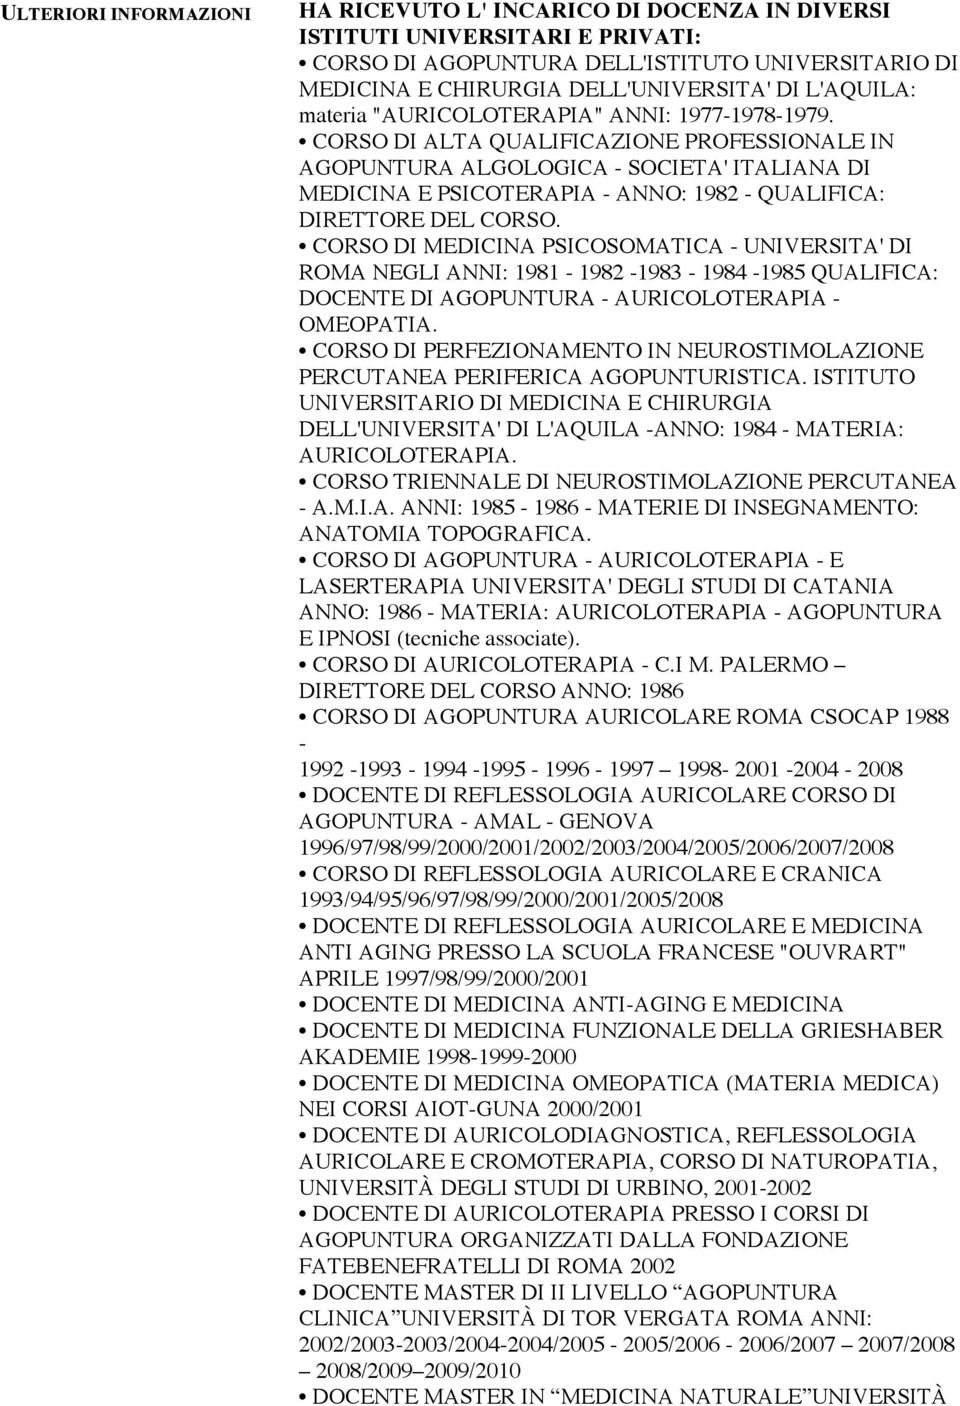 CORSO DI ALTA QUALIFICAZIONE PROFESSIONALE IN AGOPUNTURA ALGOLOGICA - SOCIETA' ITALIANA DI MEDICINA E PSICOTERAPIA - ANNO: 1982 - QUALIFICA: DIRETTORE DEL CORSO.